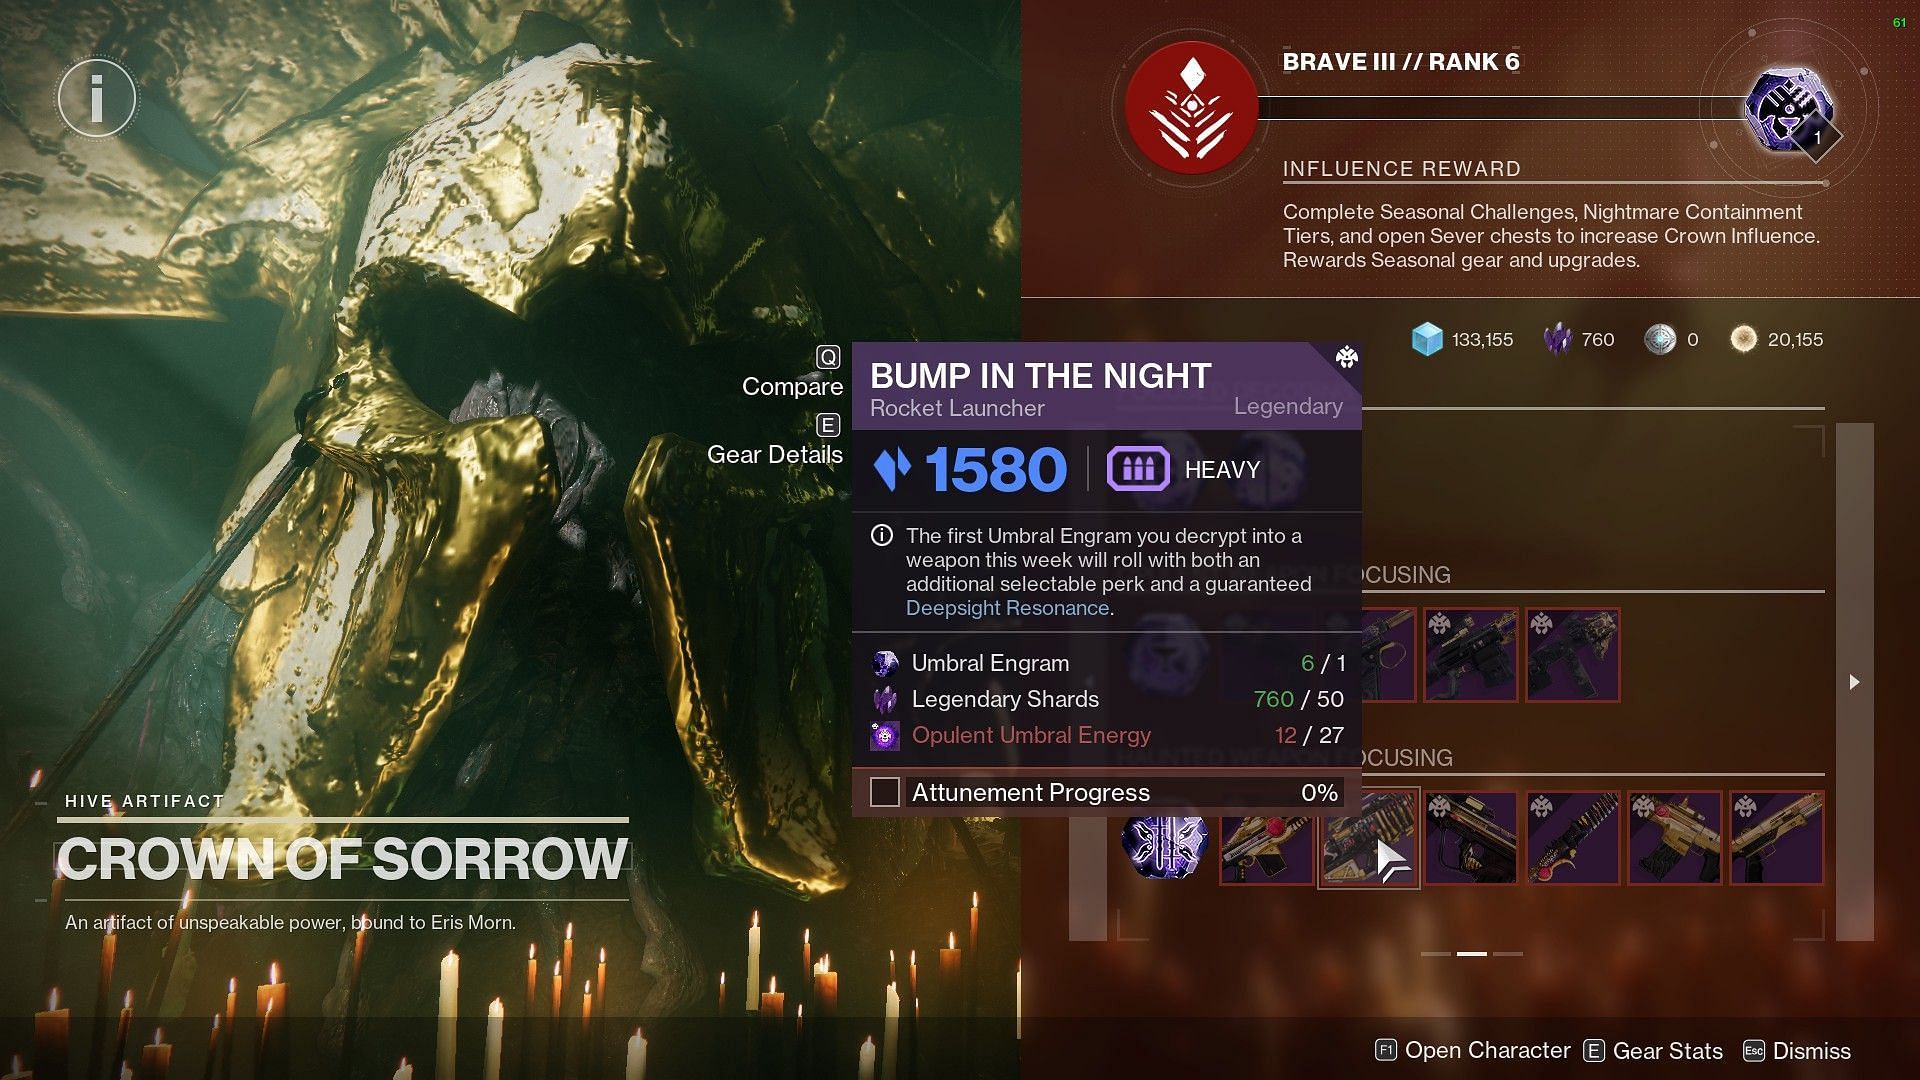 Bump in the Night (Image via Destiny 2)